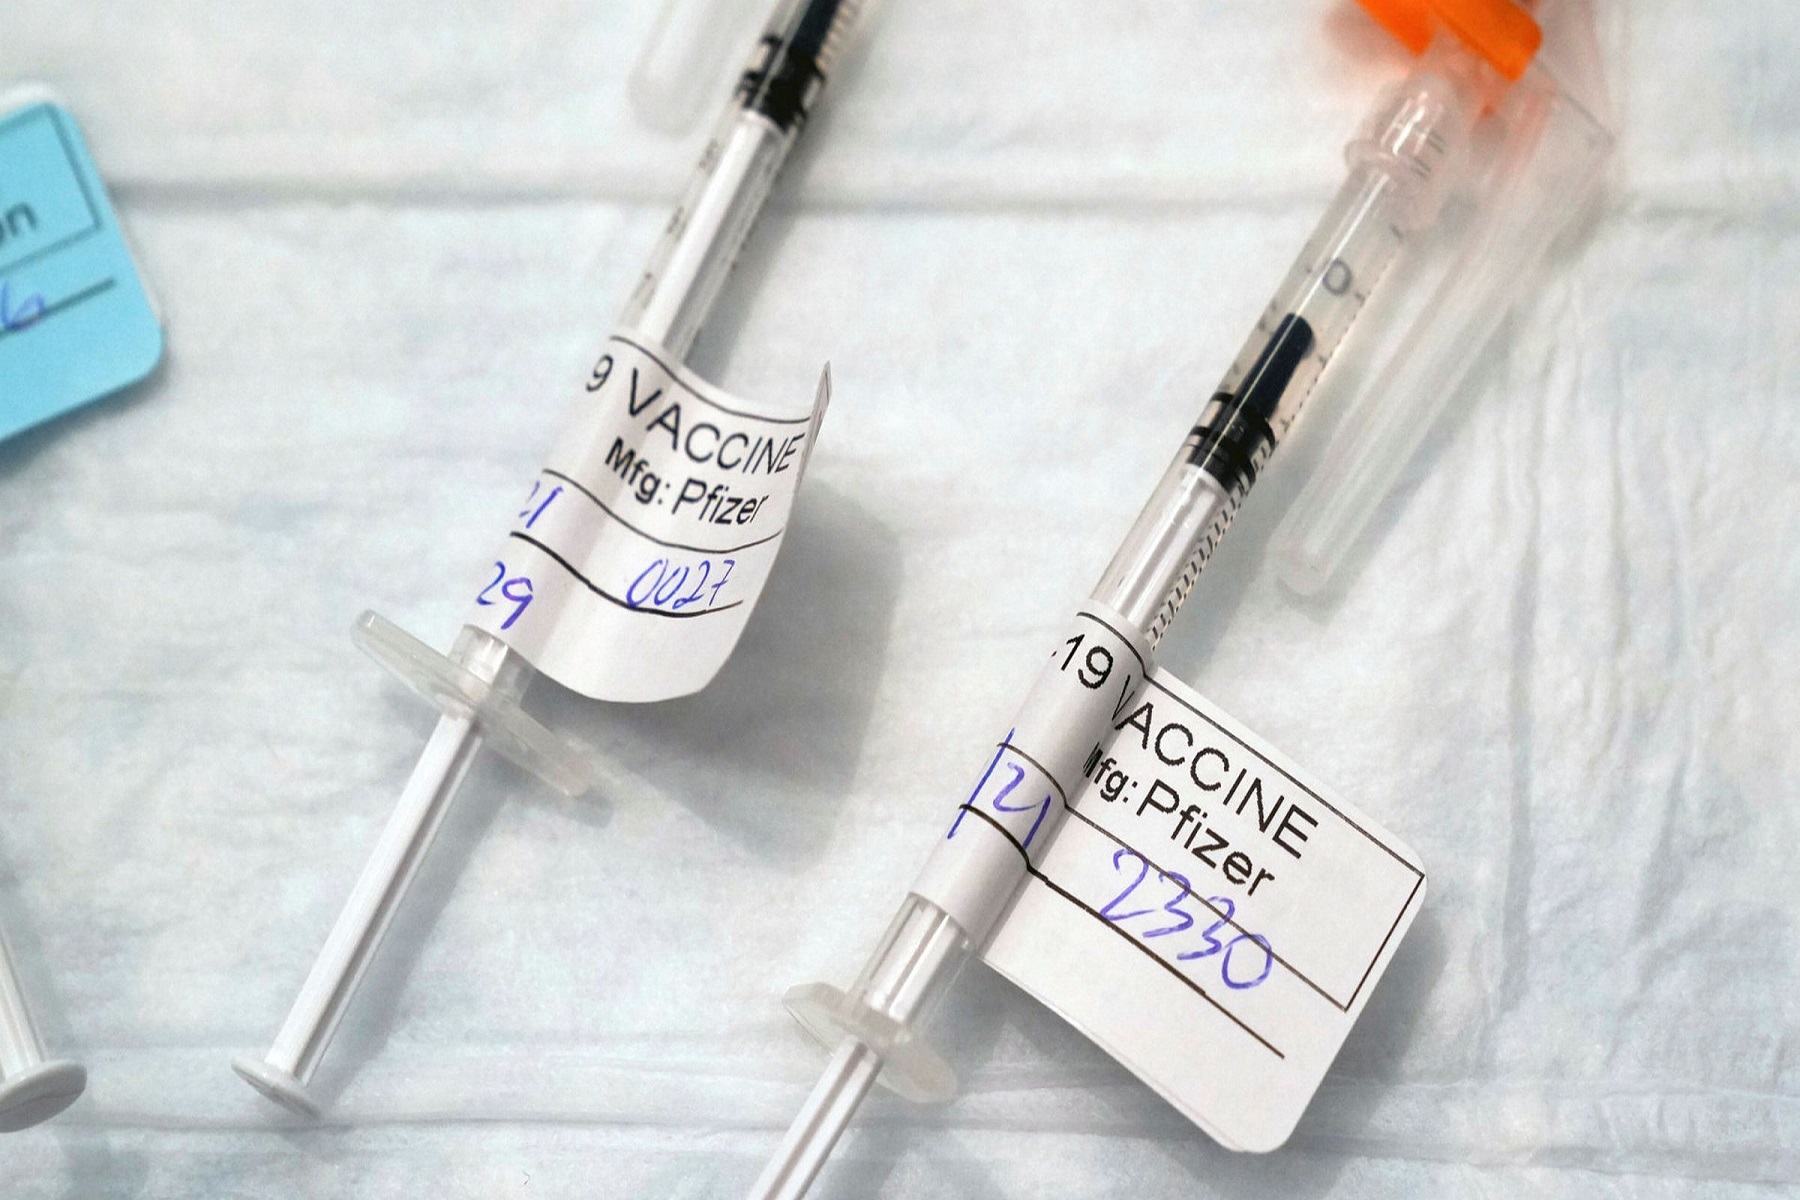 Αξιωματούχοι Υγείας: Αμερικανικά ενισχυτικά εμβολίων COVID-19 έτοιμα για διάθεση τον Σεπτέμβριο